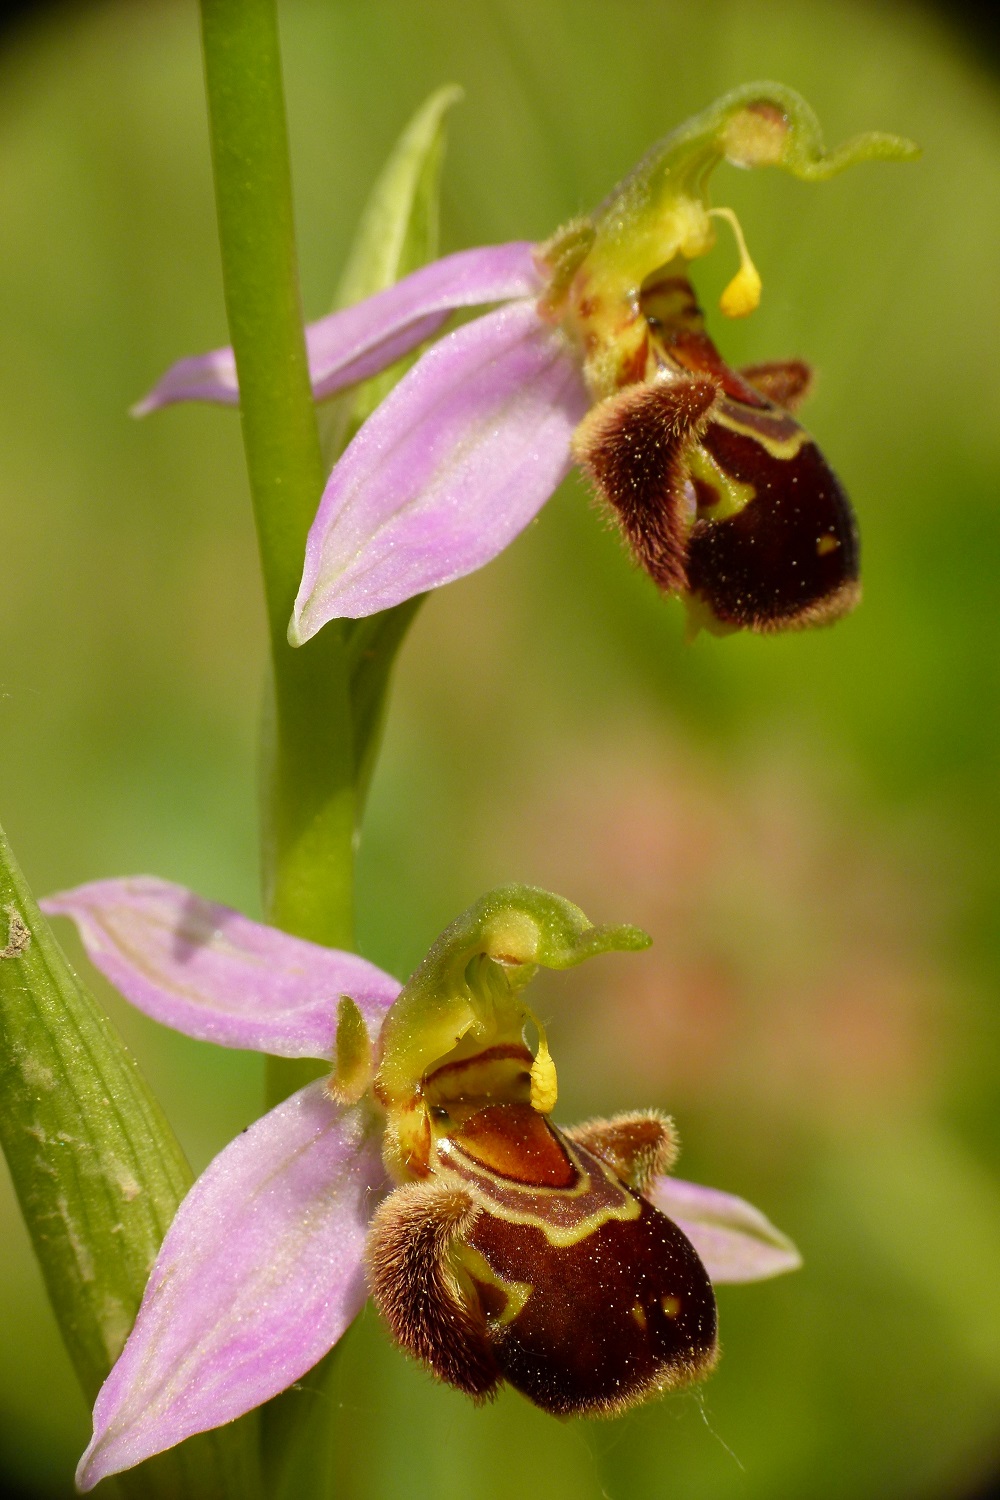 Le orchidee spontanee nel Giardino di Boboli: patrimonio naturale da tutelare e valorizzare.